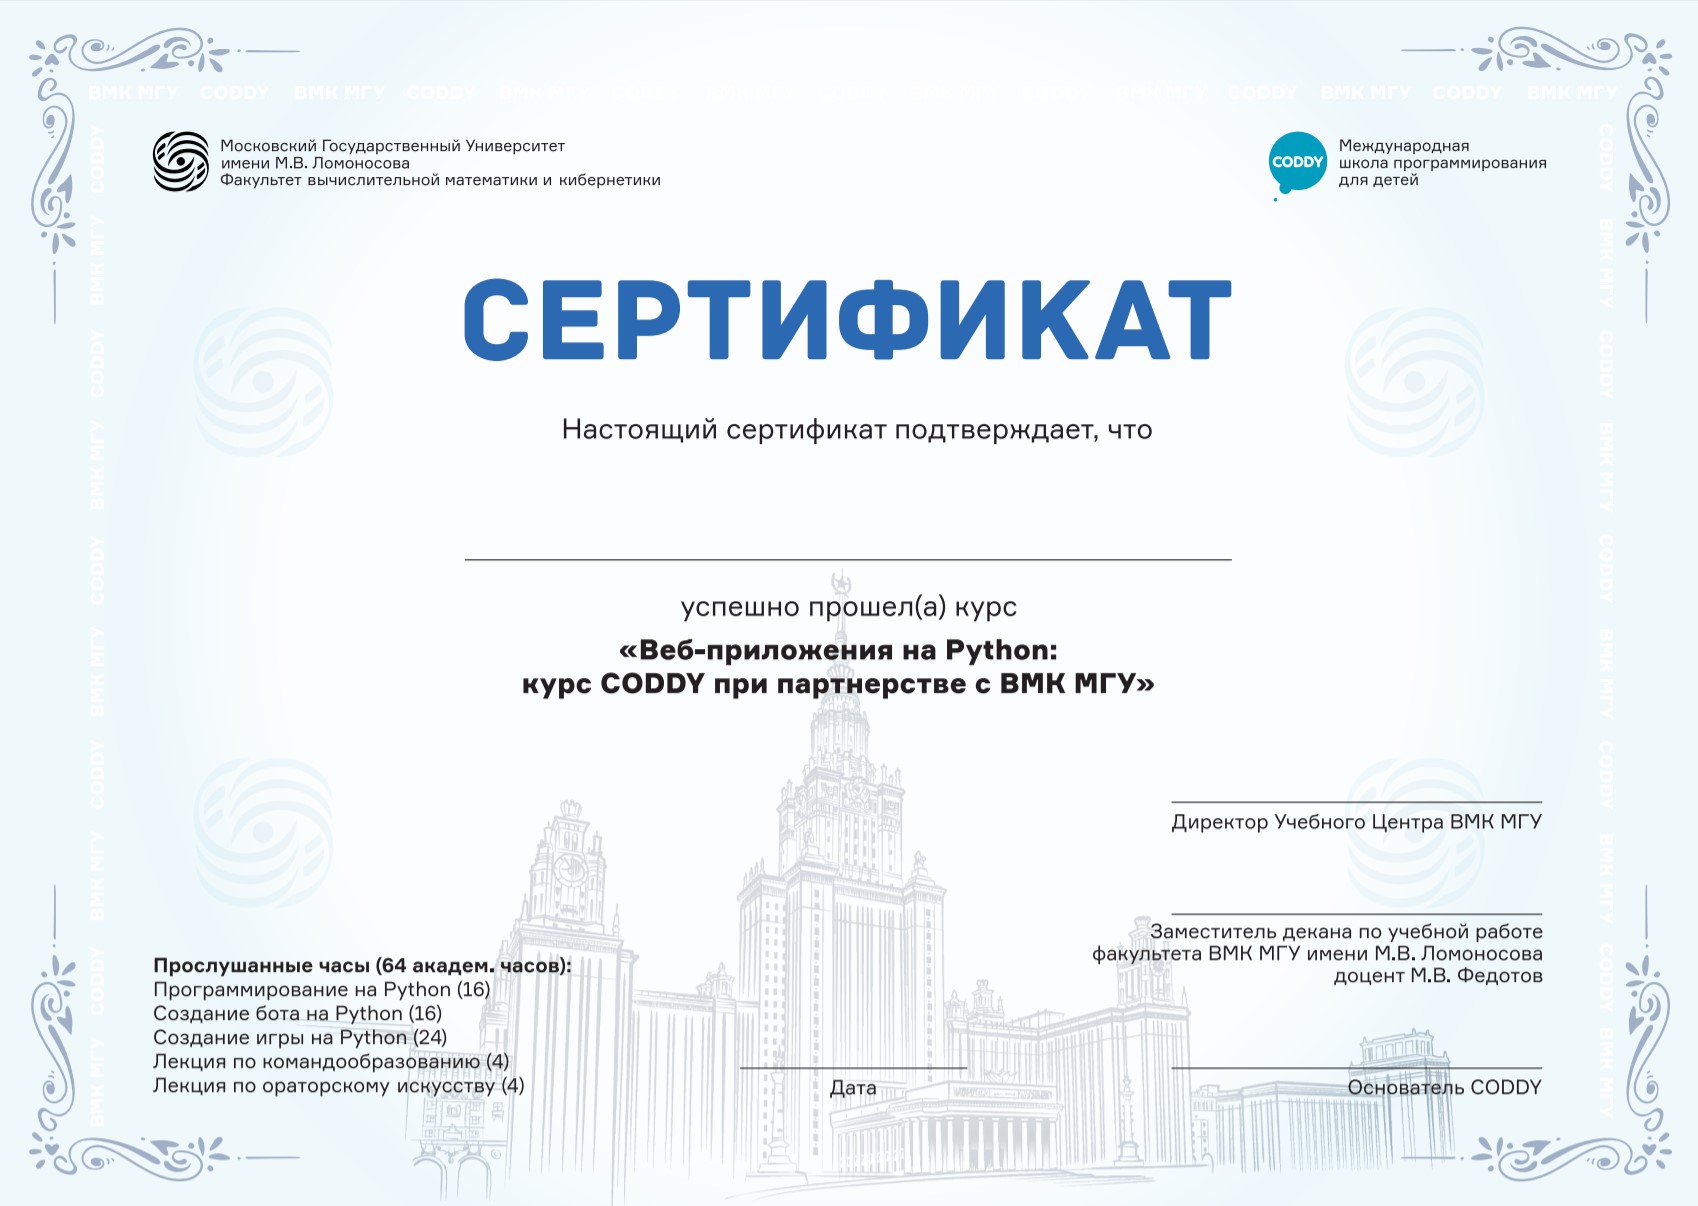 Сертификаты мос ру. Сертификат программиста. Сертификат курсов программирования. Сертификат школы программирования.